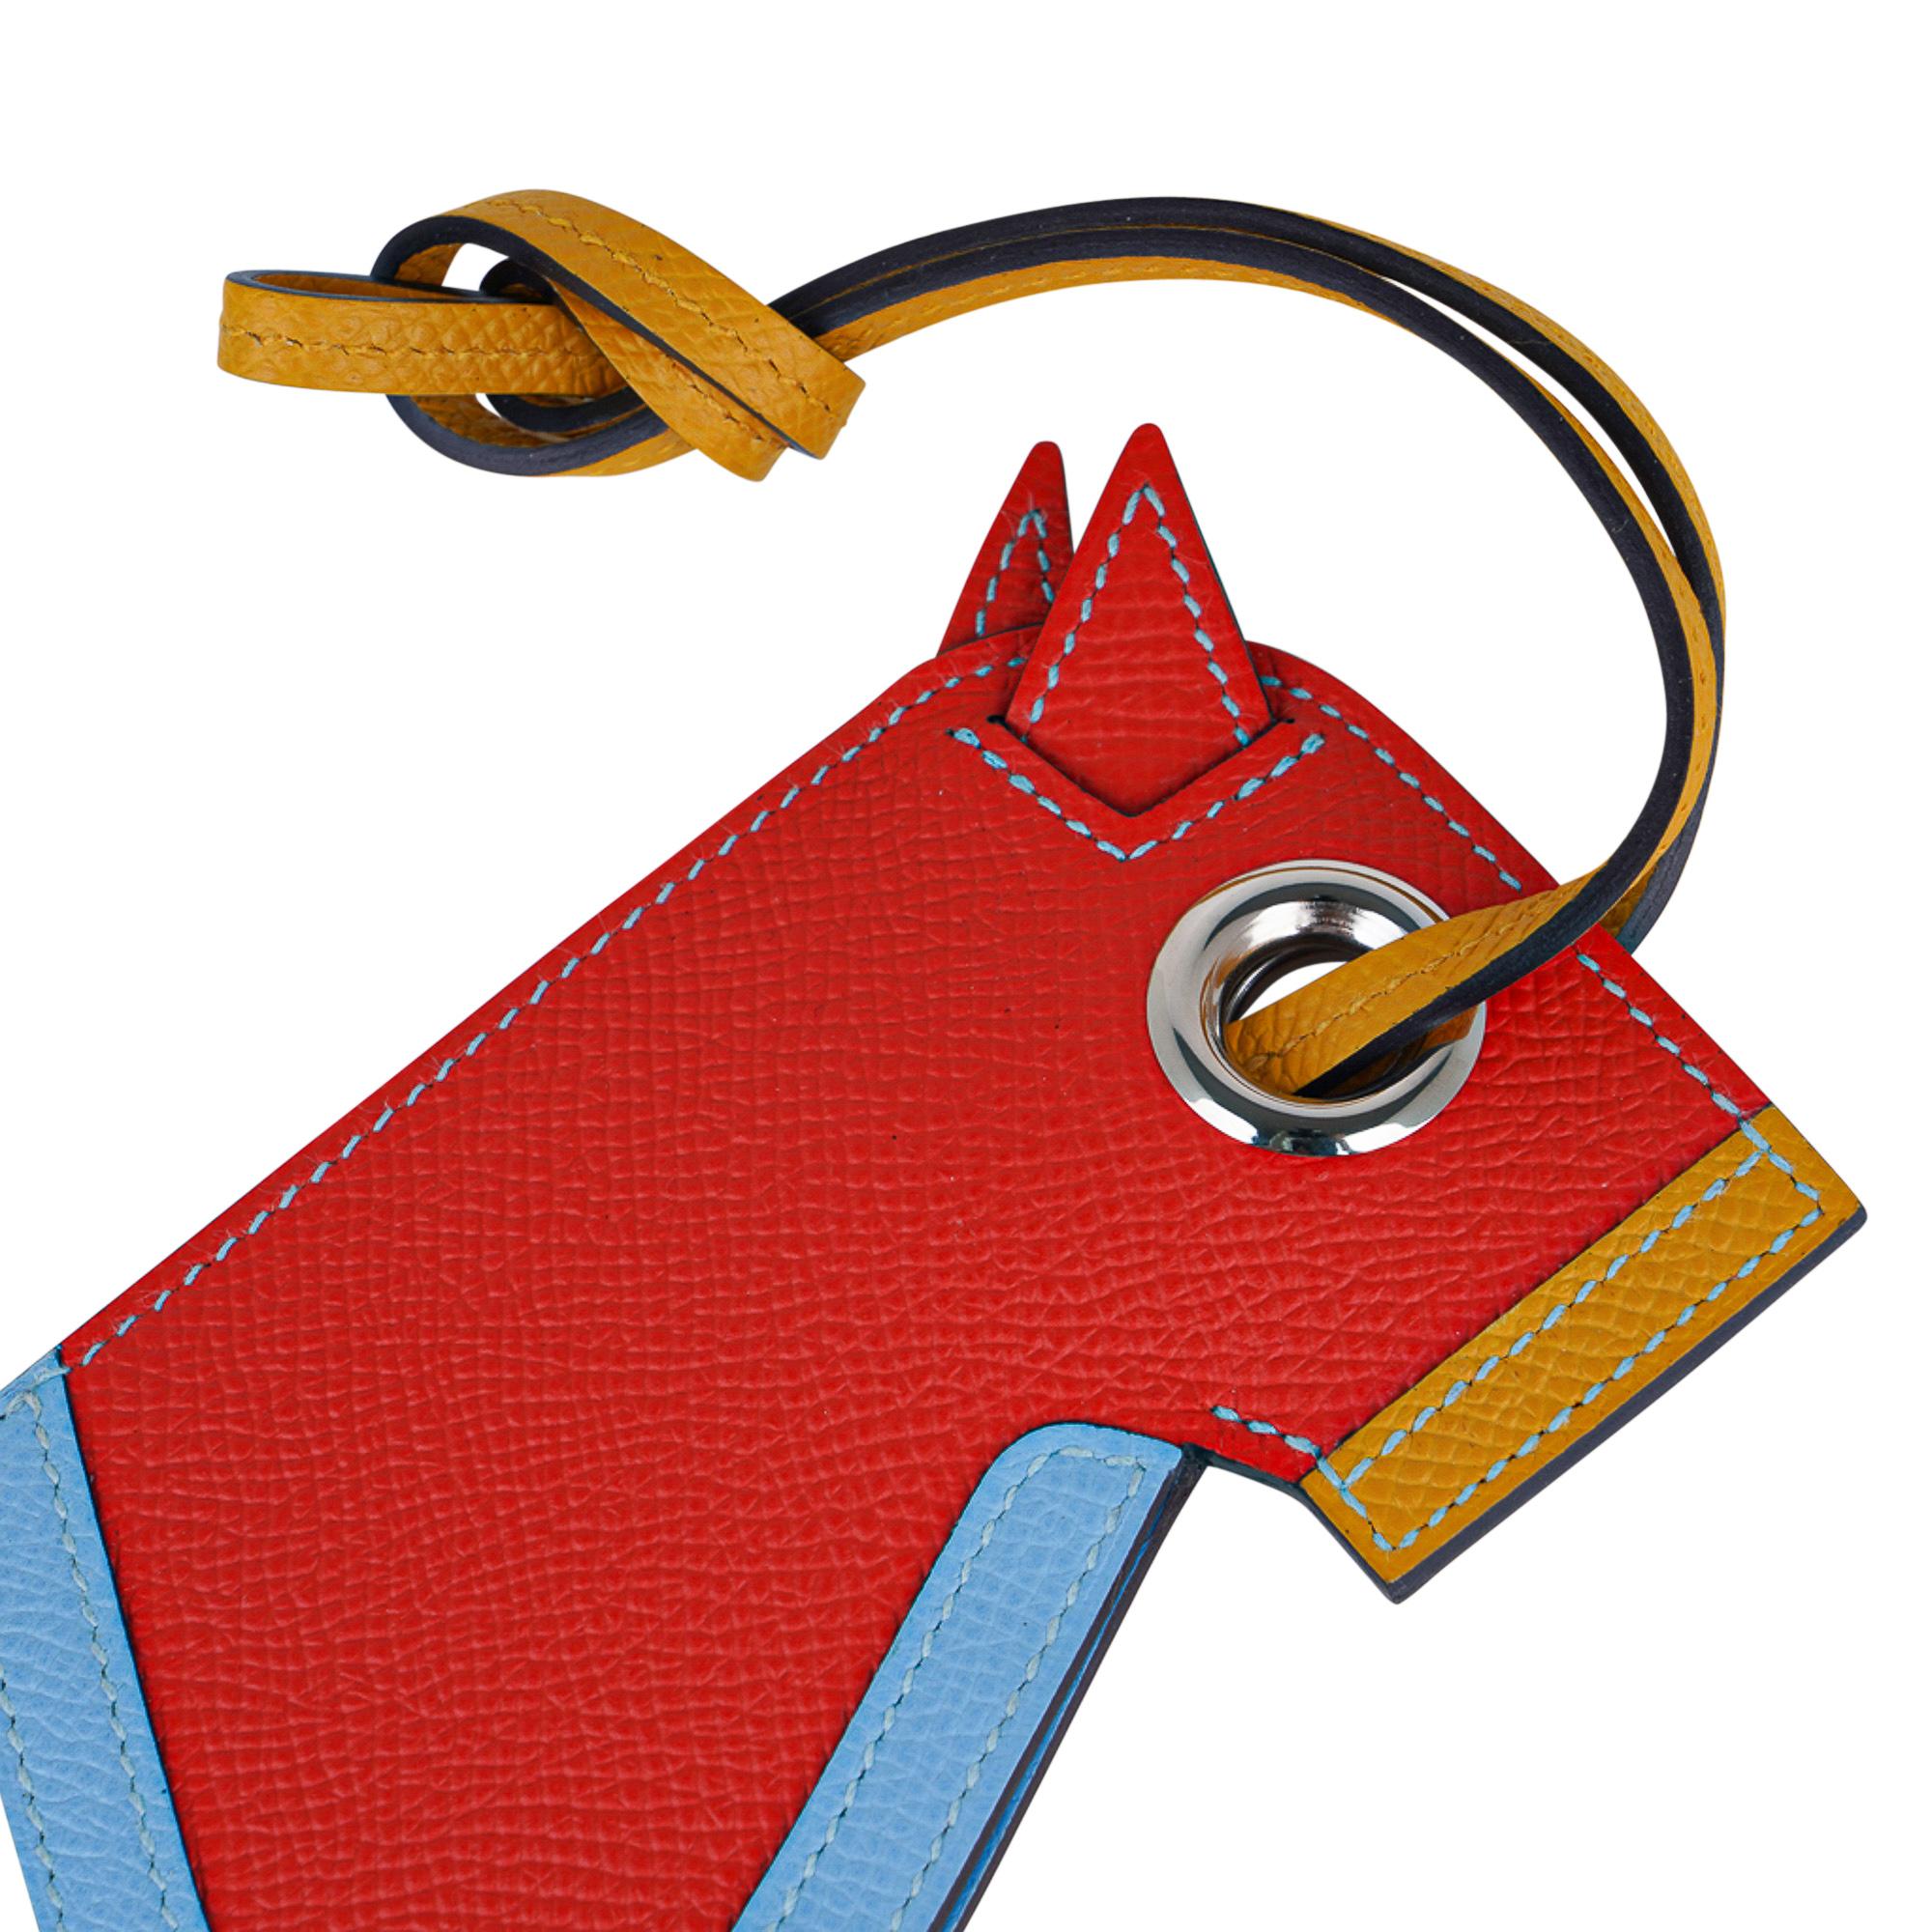 Mightychic offre une garantie d'authenticité du porte-clés Hermès Camail convoité dans Capucine,  Jaune Ambre et Bleu Celeste.
Une version moderne de la tête de cheval en cuir d'Epsom avec un porte-clés caché.
Charmante et enjouée, elle s'intègre